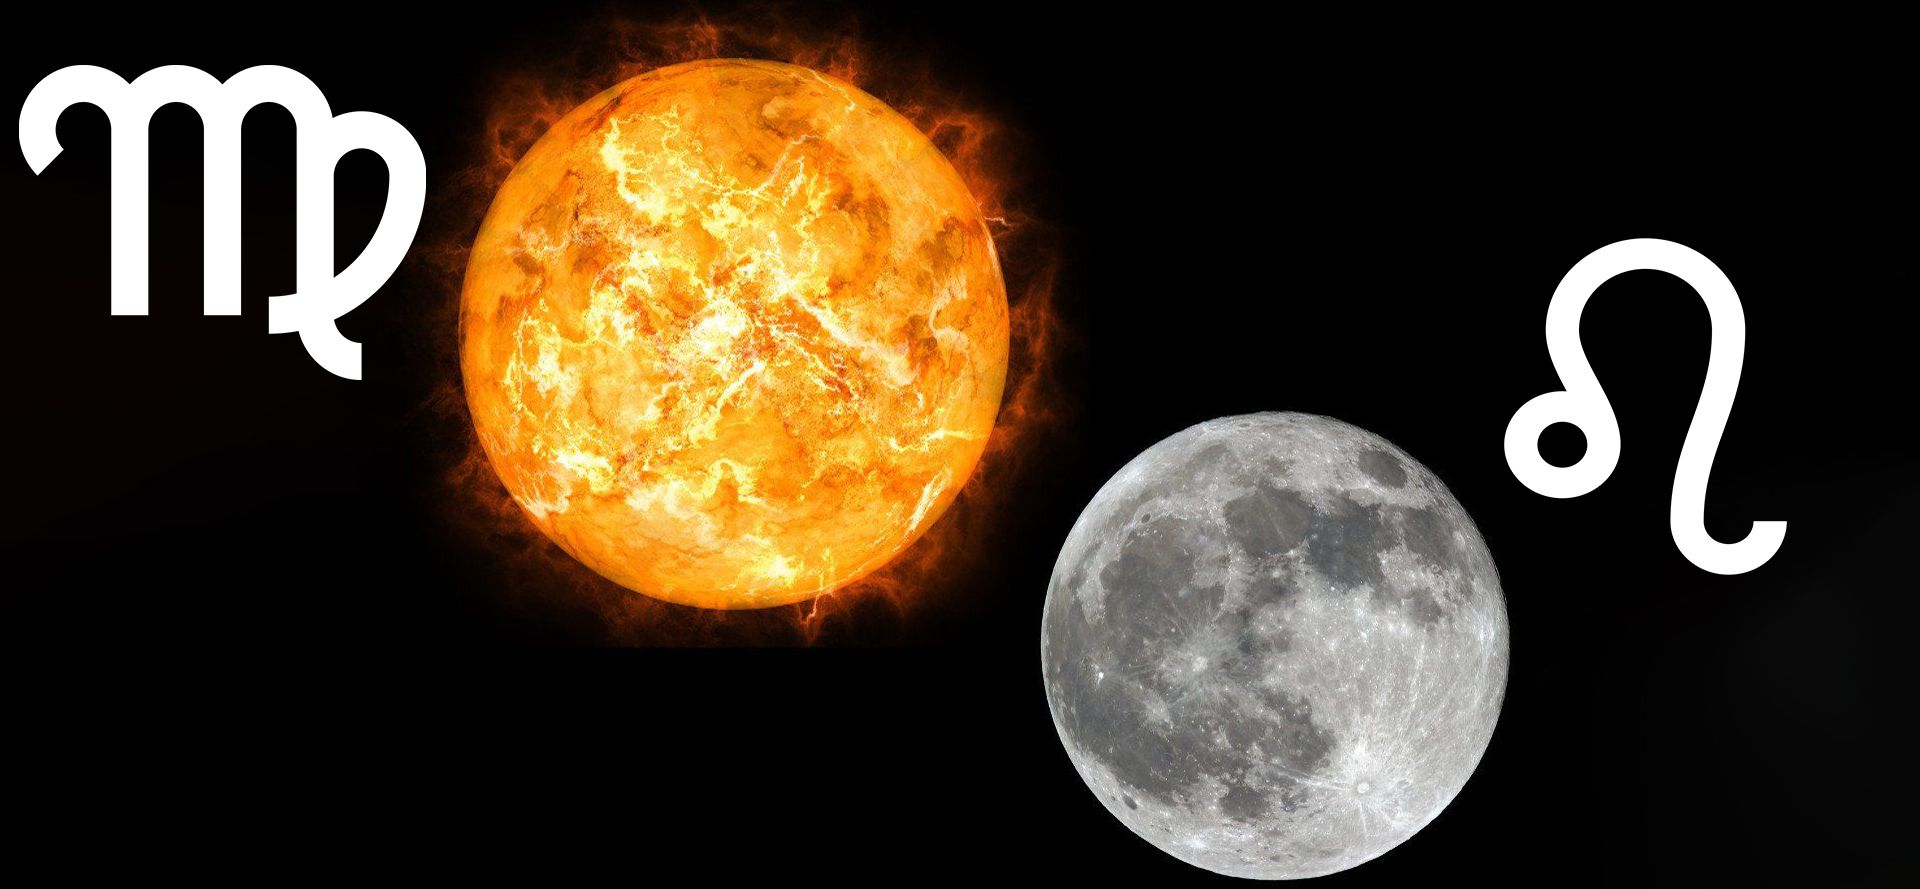 Virgo Sun and Leo Moon.